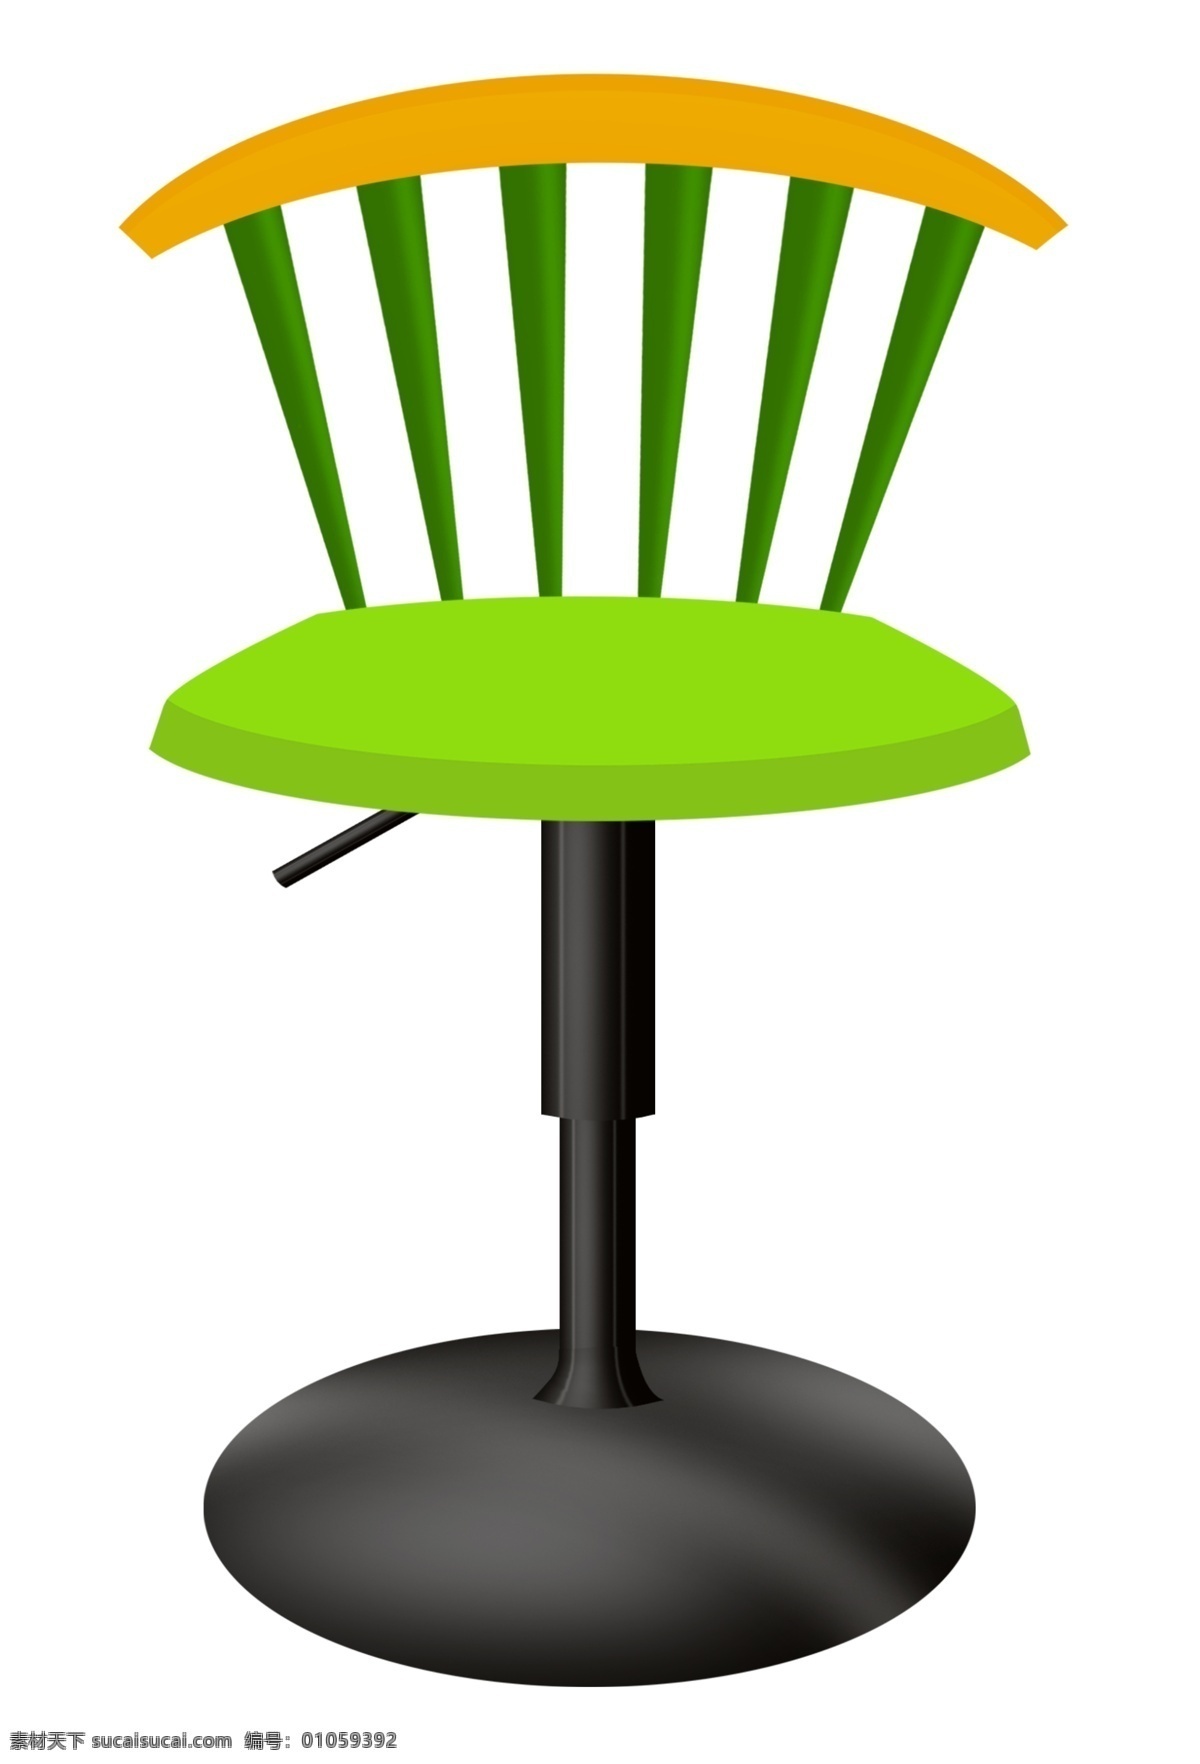 绿色 升降 椅子 插画 绿色的椅子 卡通插画 椅子插画 座椅插画 木质座椅 实木座椅 黑色的底座